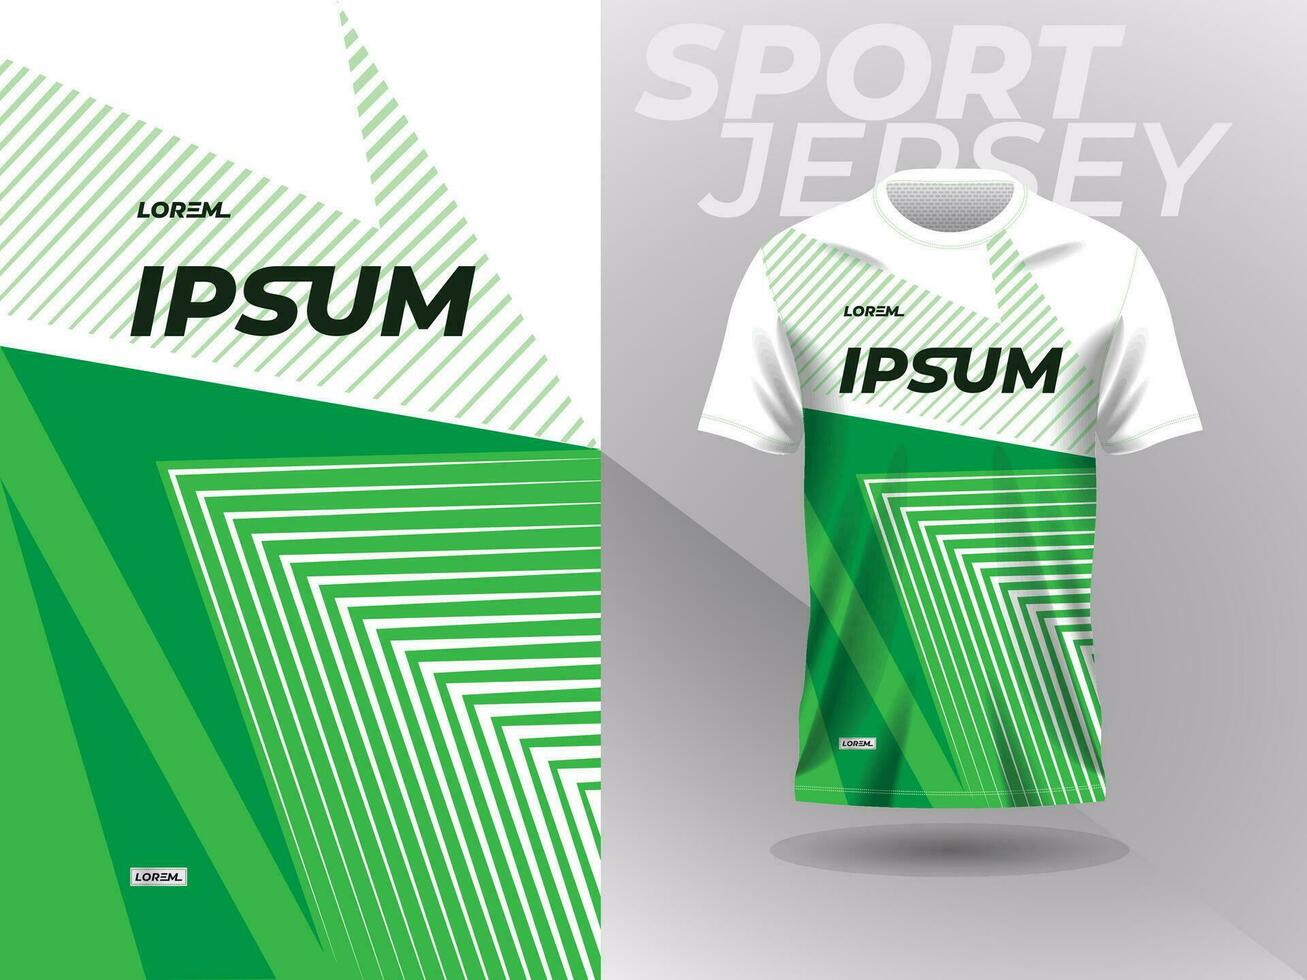 Grün Sport Jersey Attrappe, Lehrmodell, Simulation Design Vorlage zum Sportbekleidung vektor